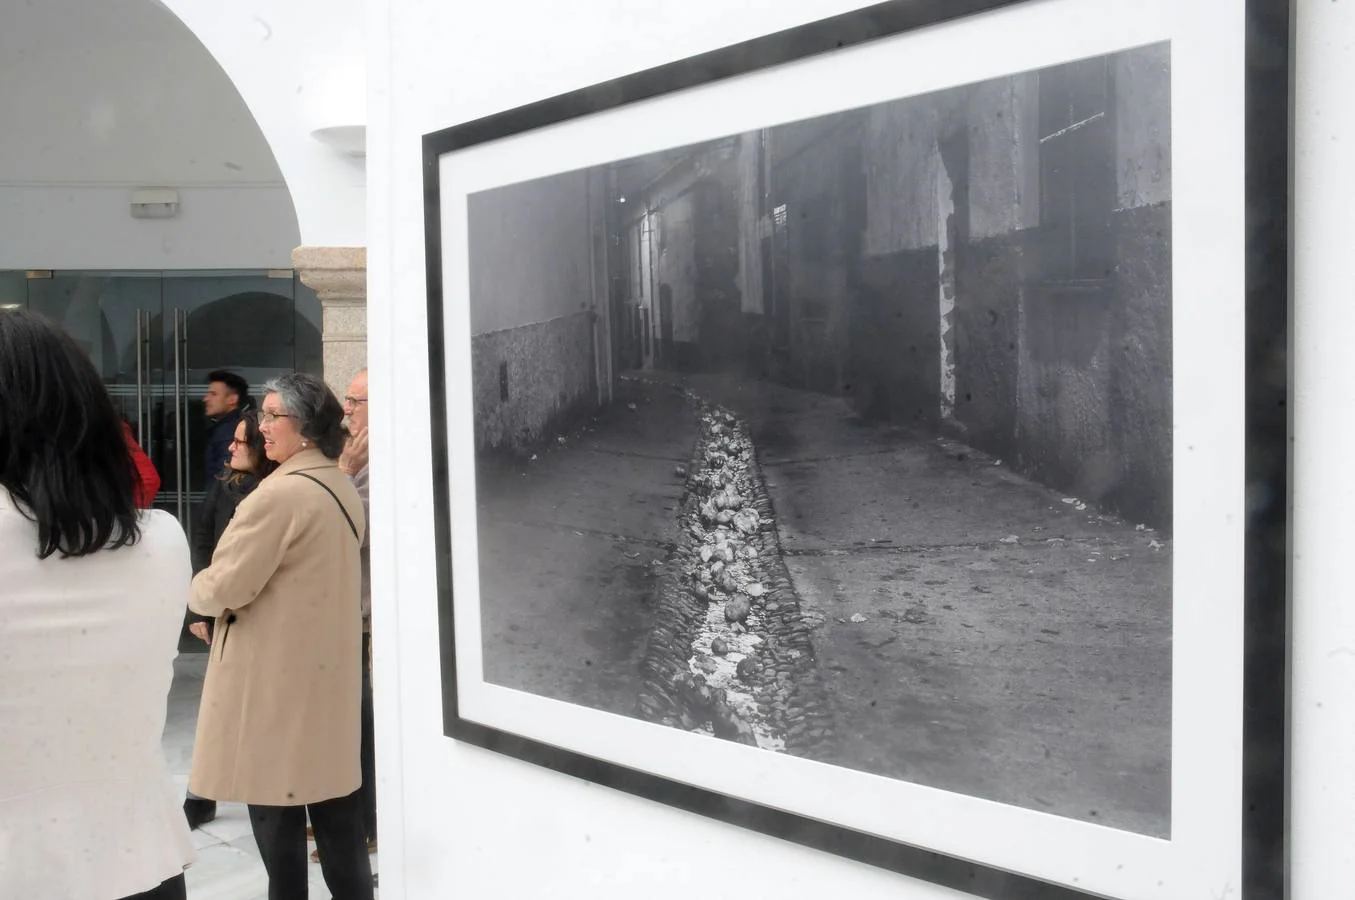 El fotógrafo expone una serie de fotografías que podrán verse durante este mes de abril en el Patio Noble de la Asamblea de Extremadura, en Mérida